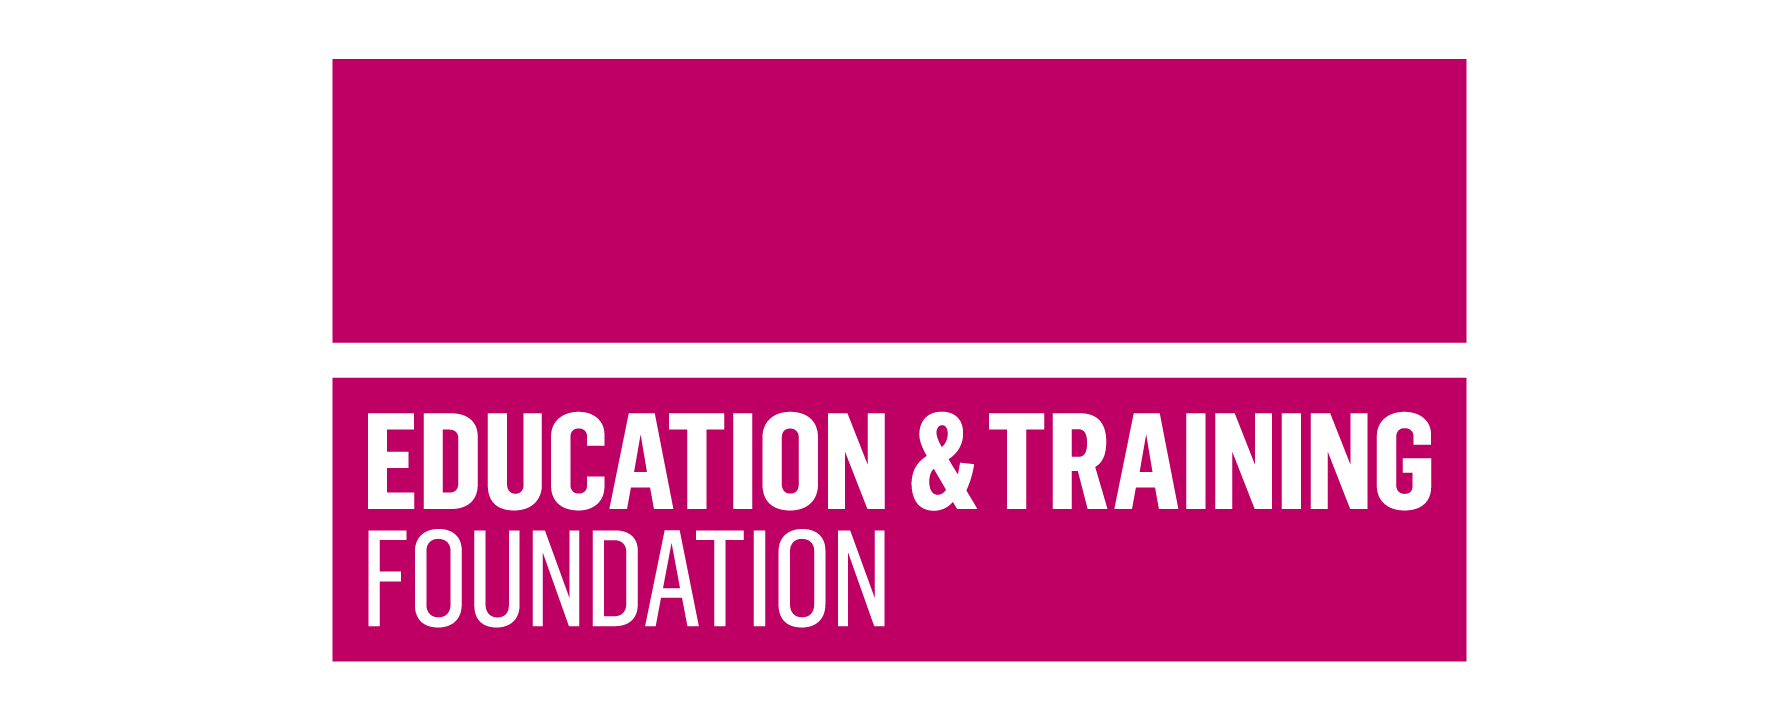 Education and training foundation logo